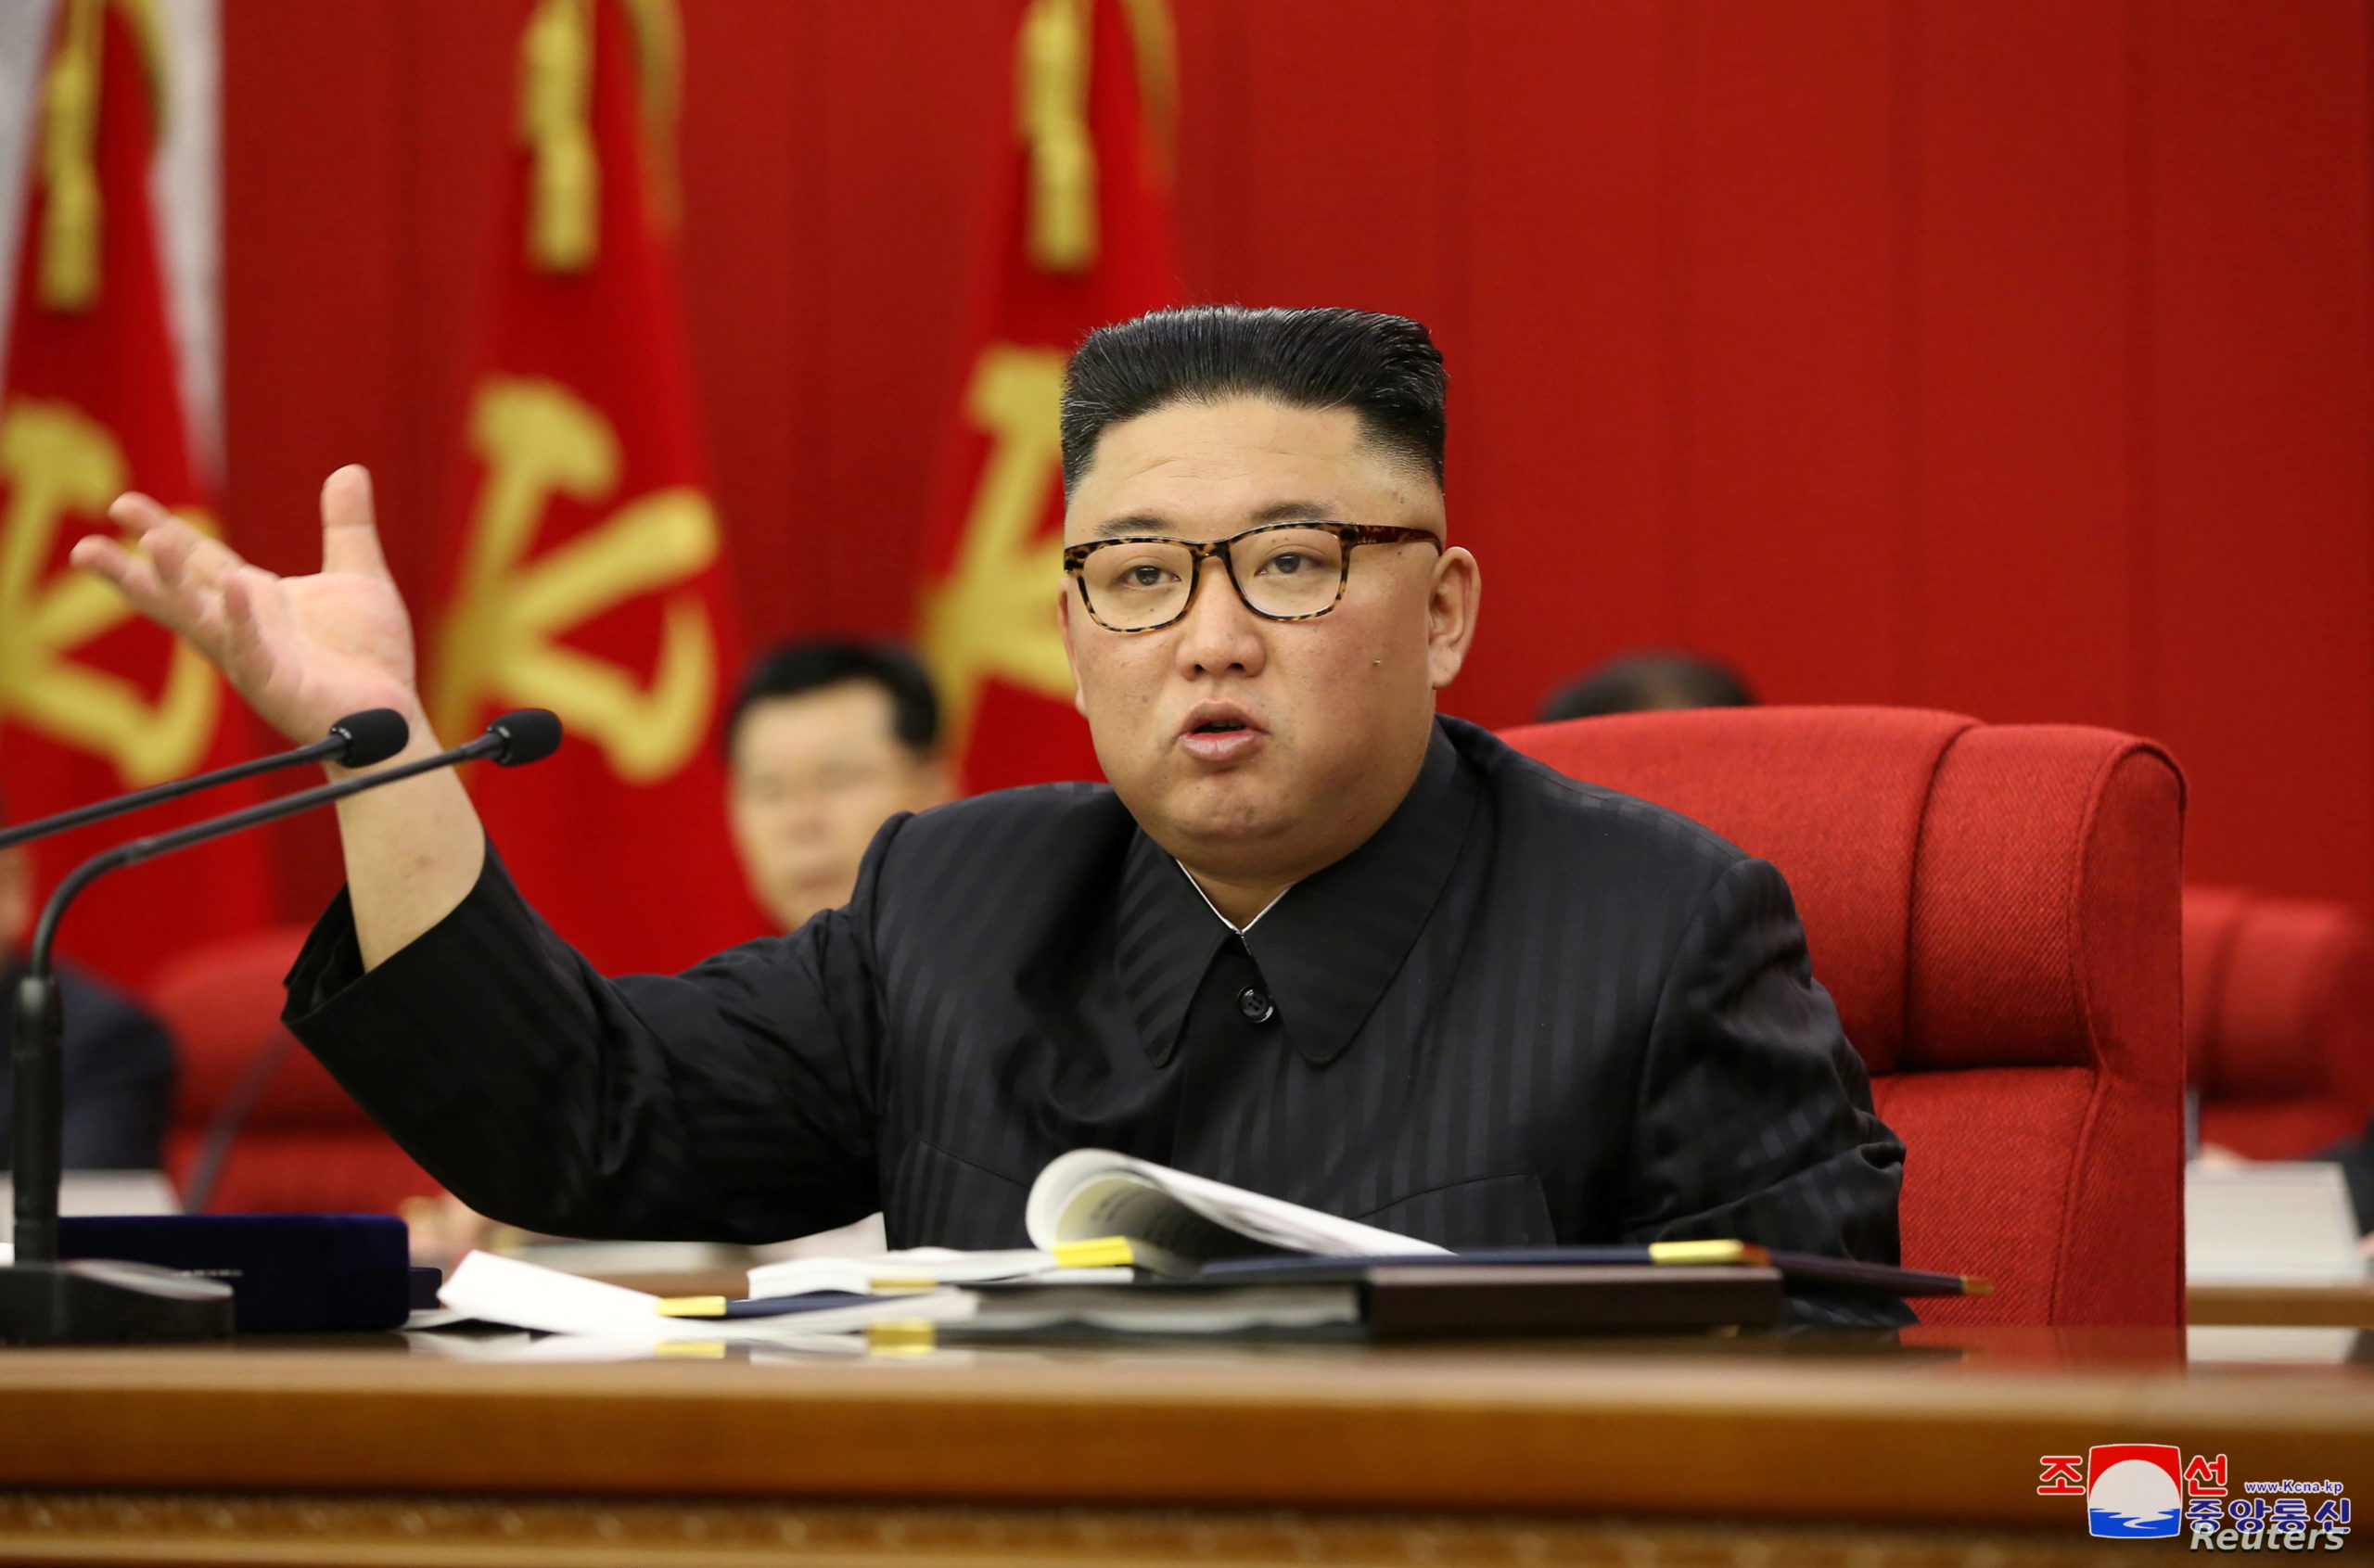 رسانه های کره شمالی از قول یک شهروند ناشناس در پیونگ یانگ نقل می کند که تمام مردم این کشور با دیدن کاهش وزن واضح رهبر کشورشان دلشکسته شده اند.